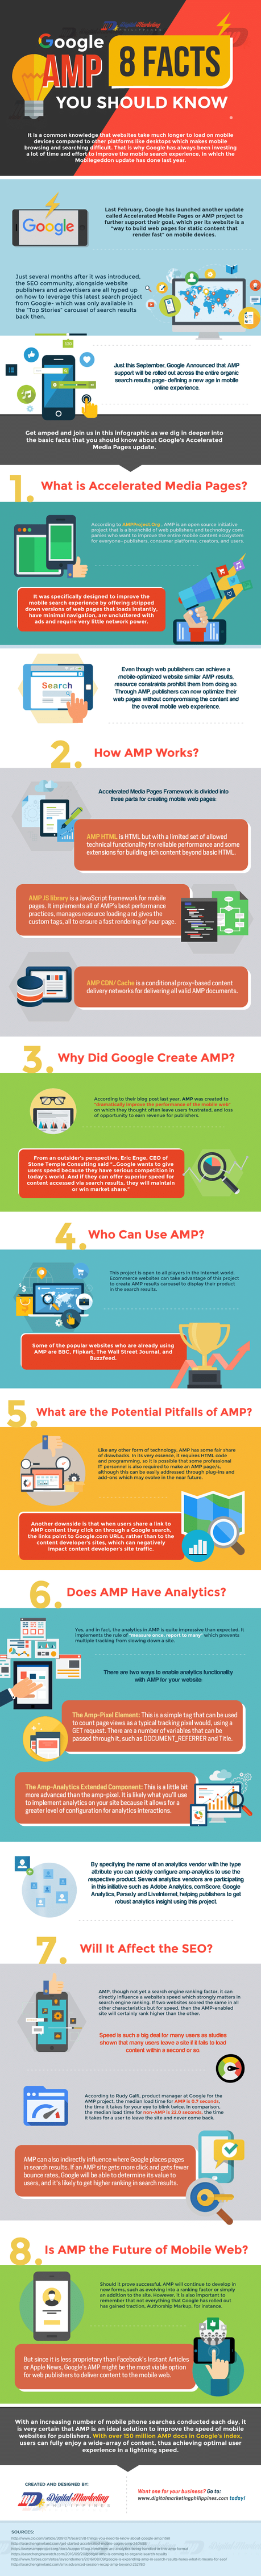 Définition du jour : Qu’est-ce que Google AMP & comment ça fonctionne ?